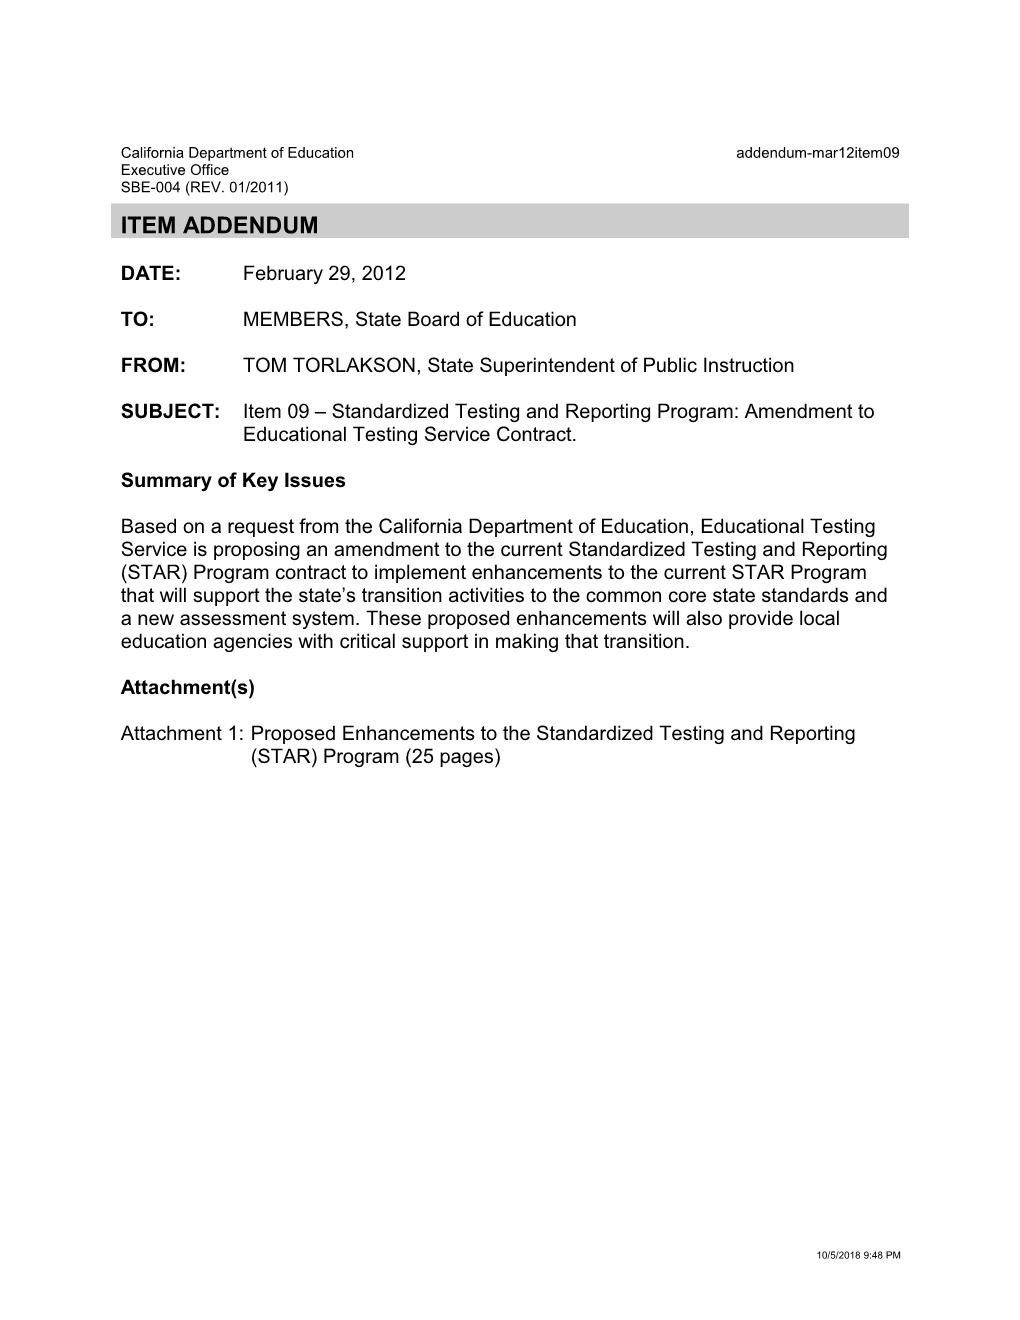 March 2012 Item 9 Addendum - Meeting Agendas (CA Dept of Education)